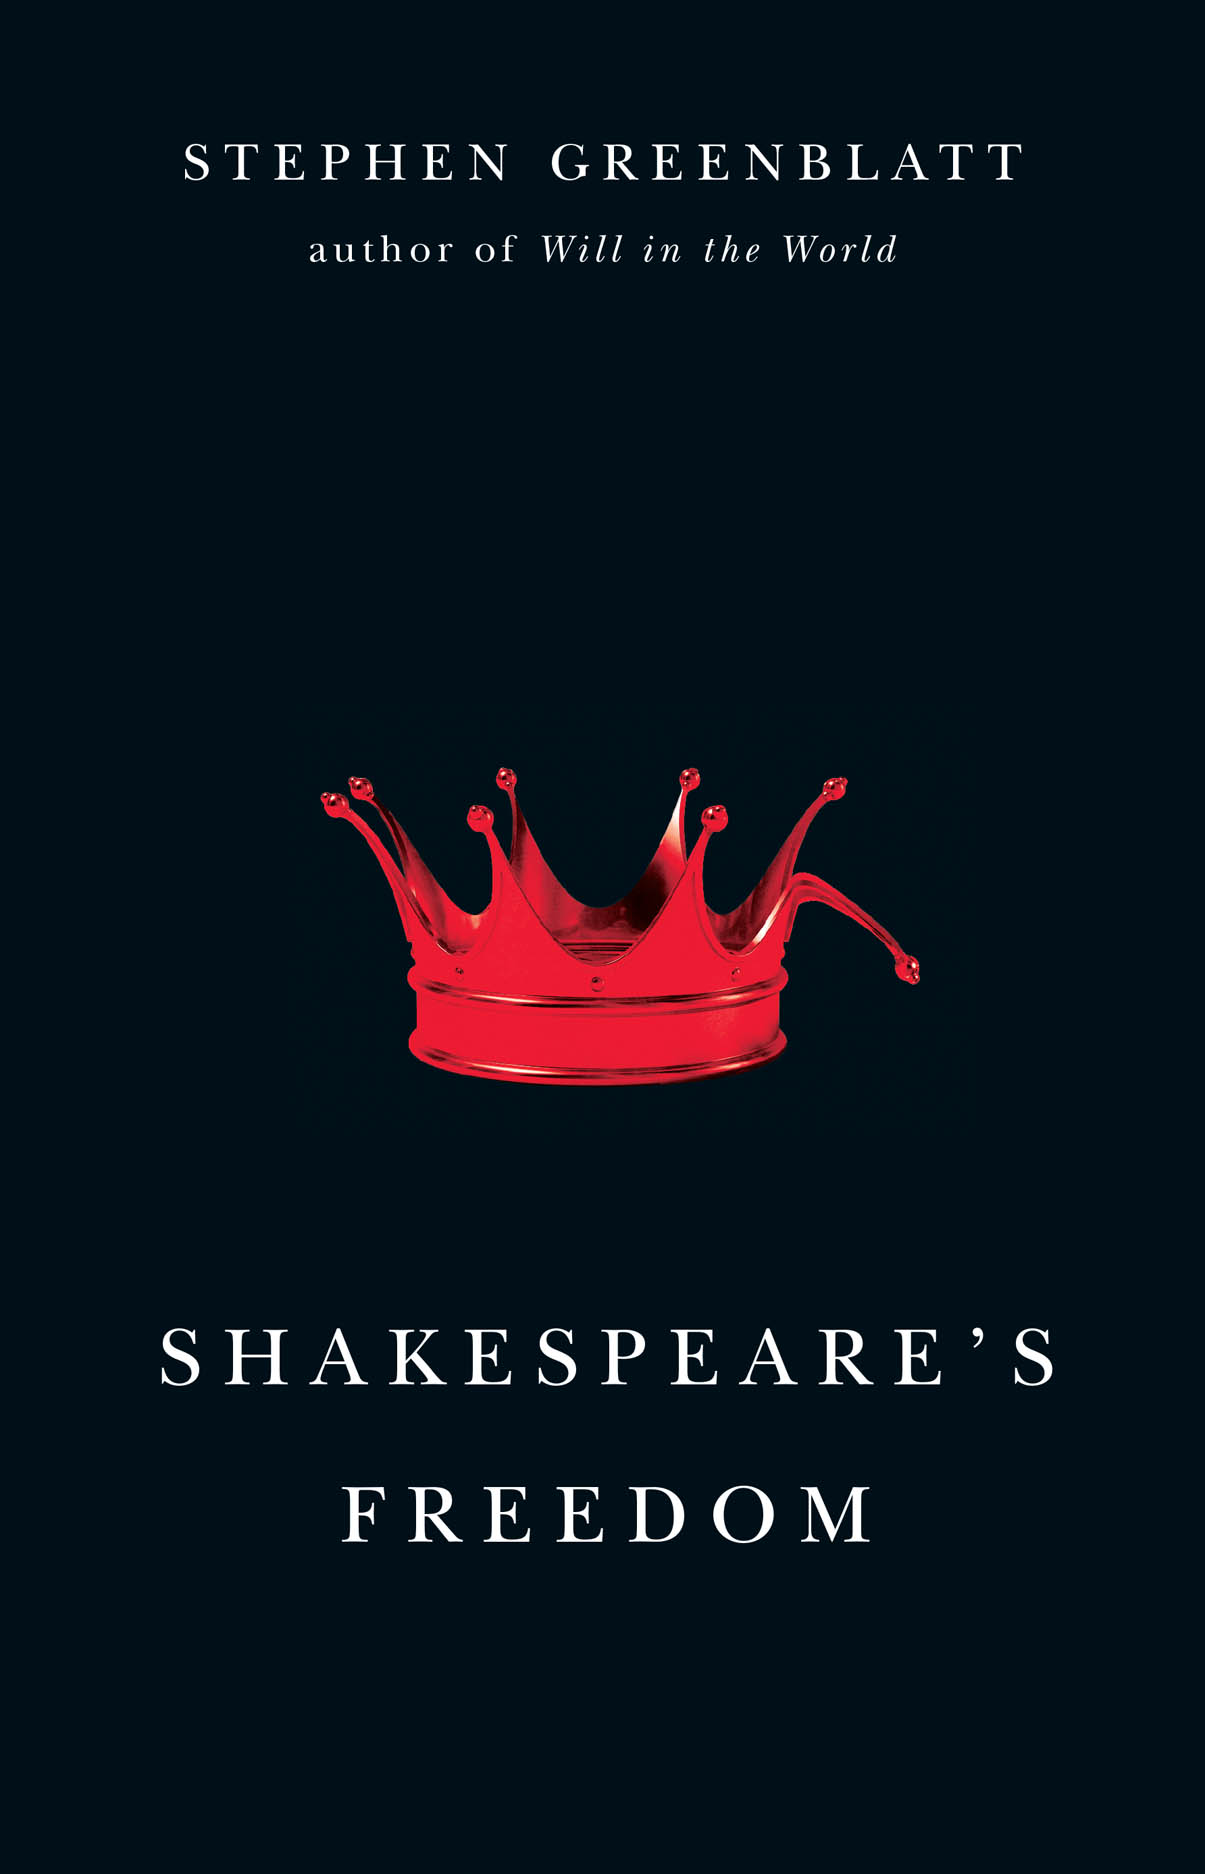 Shakespeare's Freedom